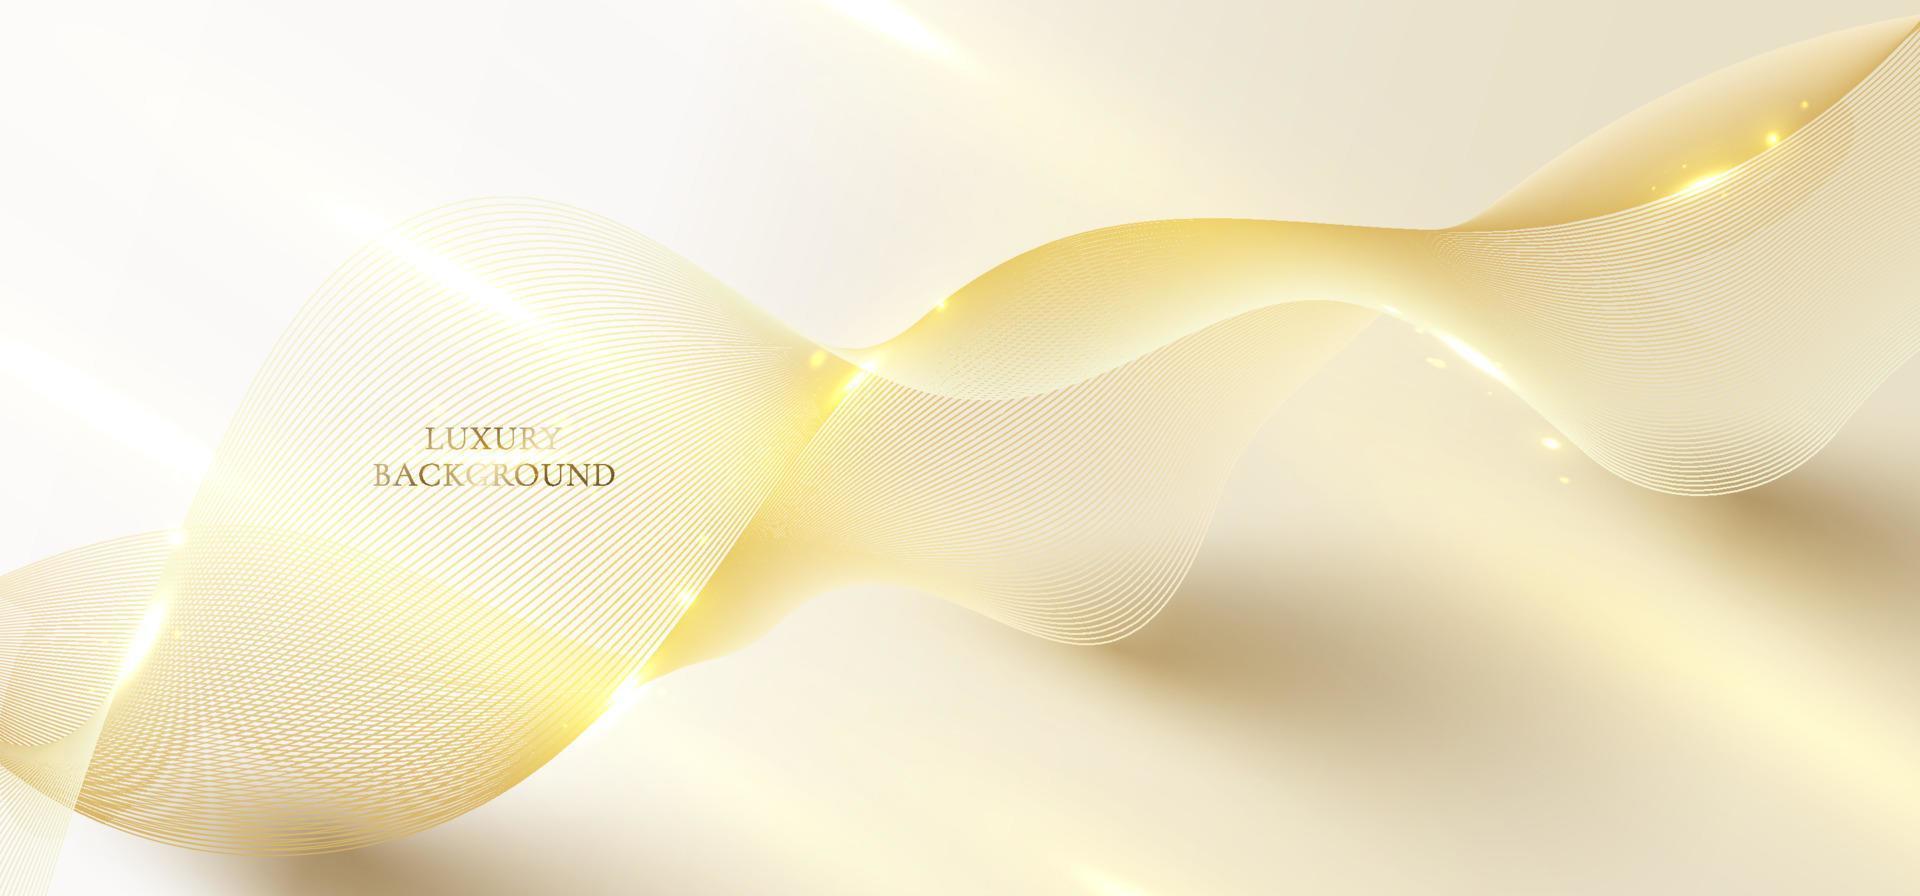 Líneas de ondas doradas elegantes en 3d abstractas y chispas de luz en un estilo de lujo de fondo limpio vector